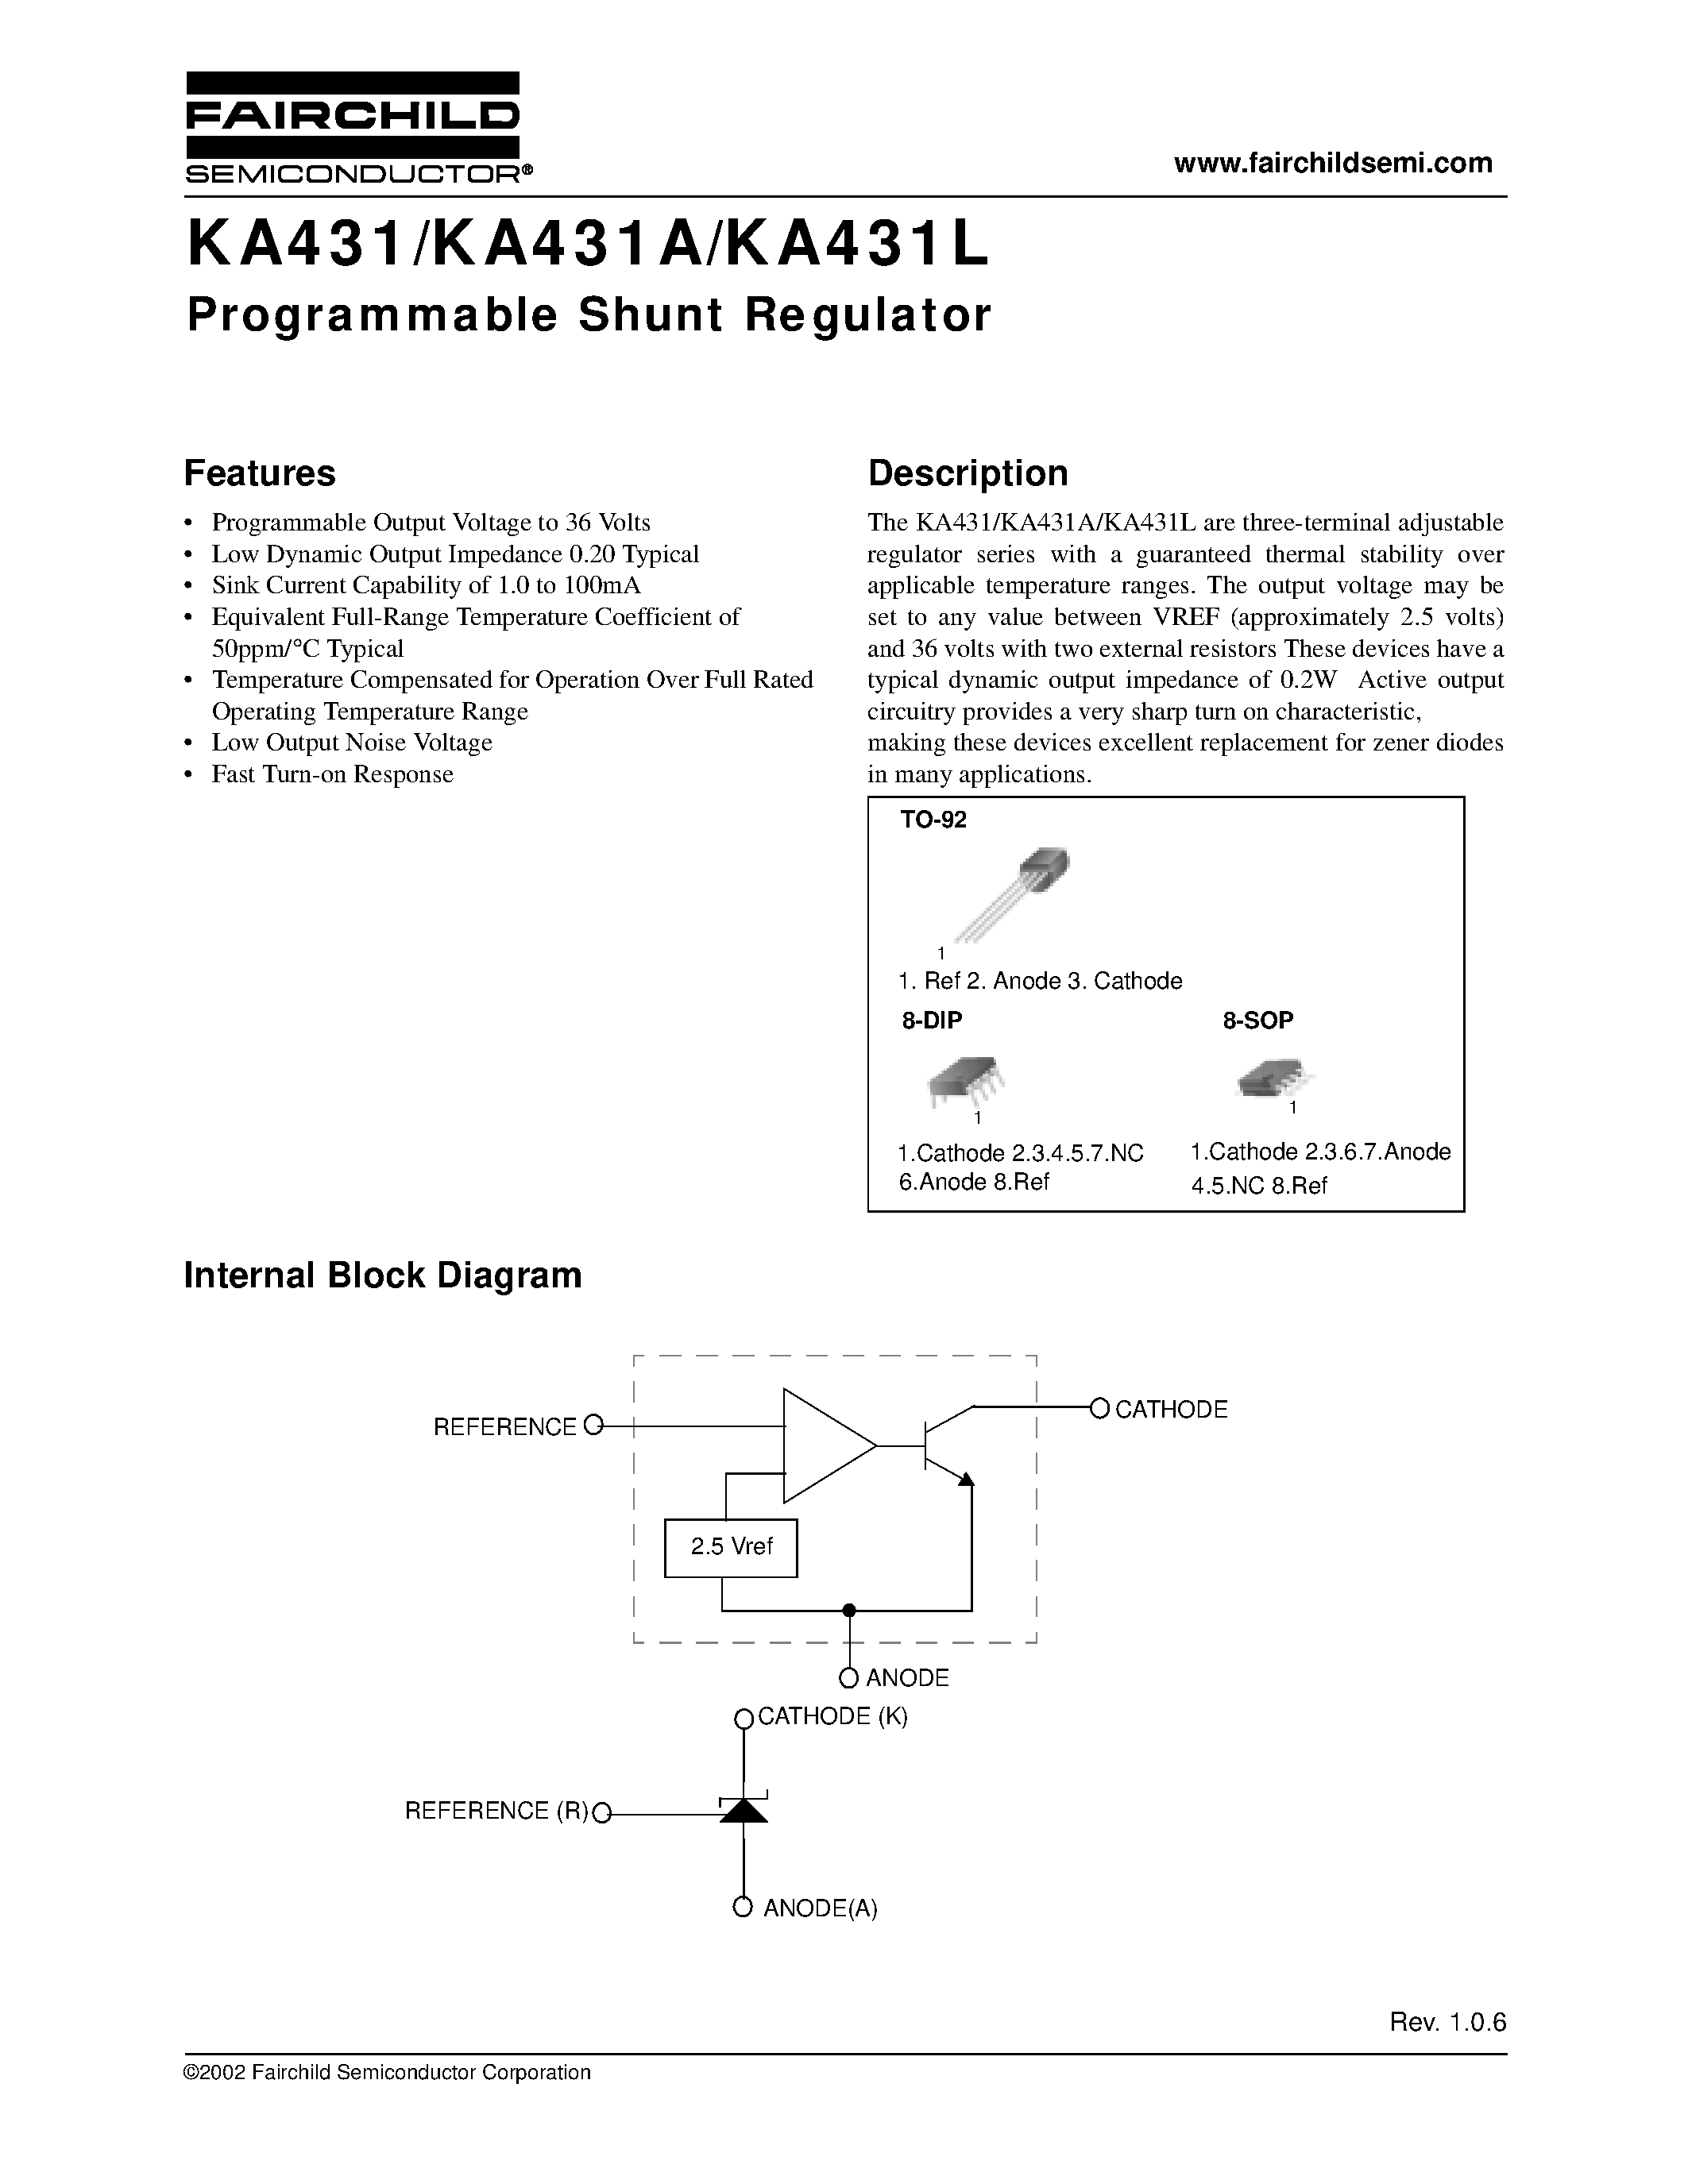 Даташит KA431AD - Programmable Shunt Regulator страница 1